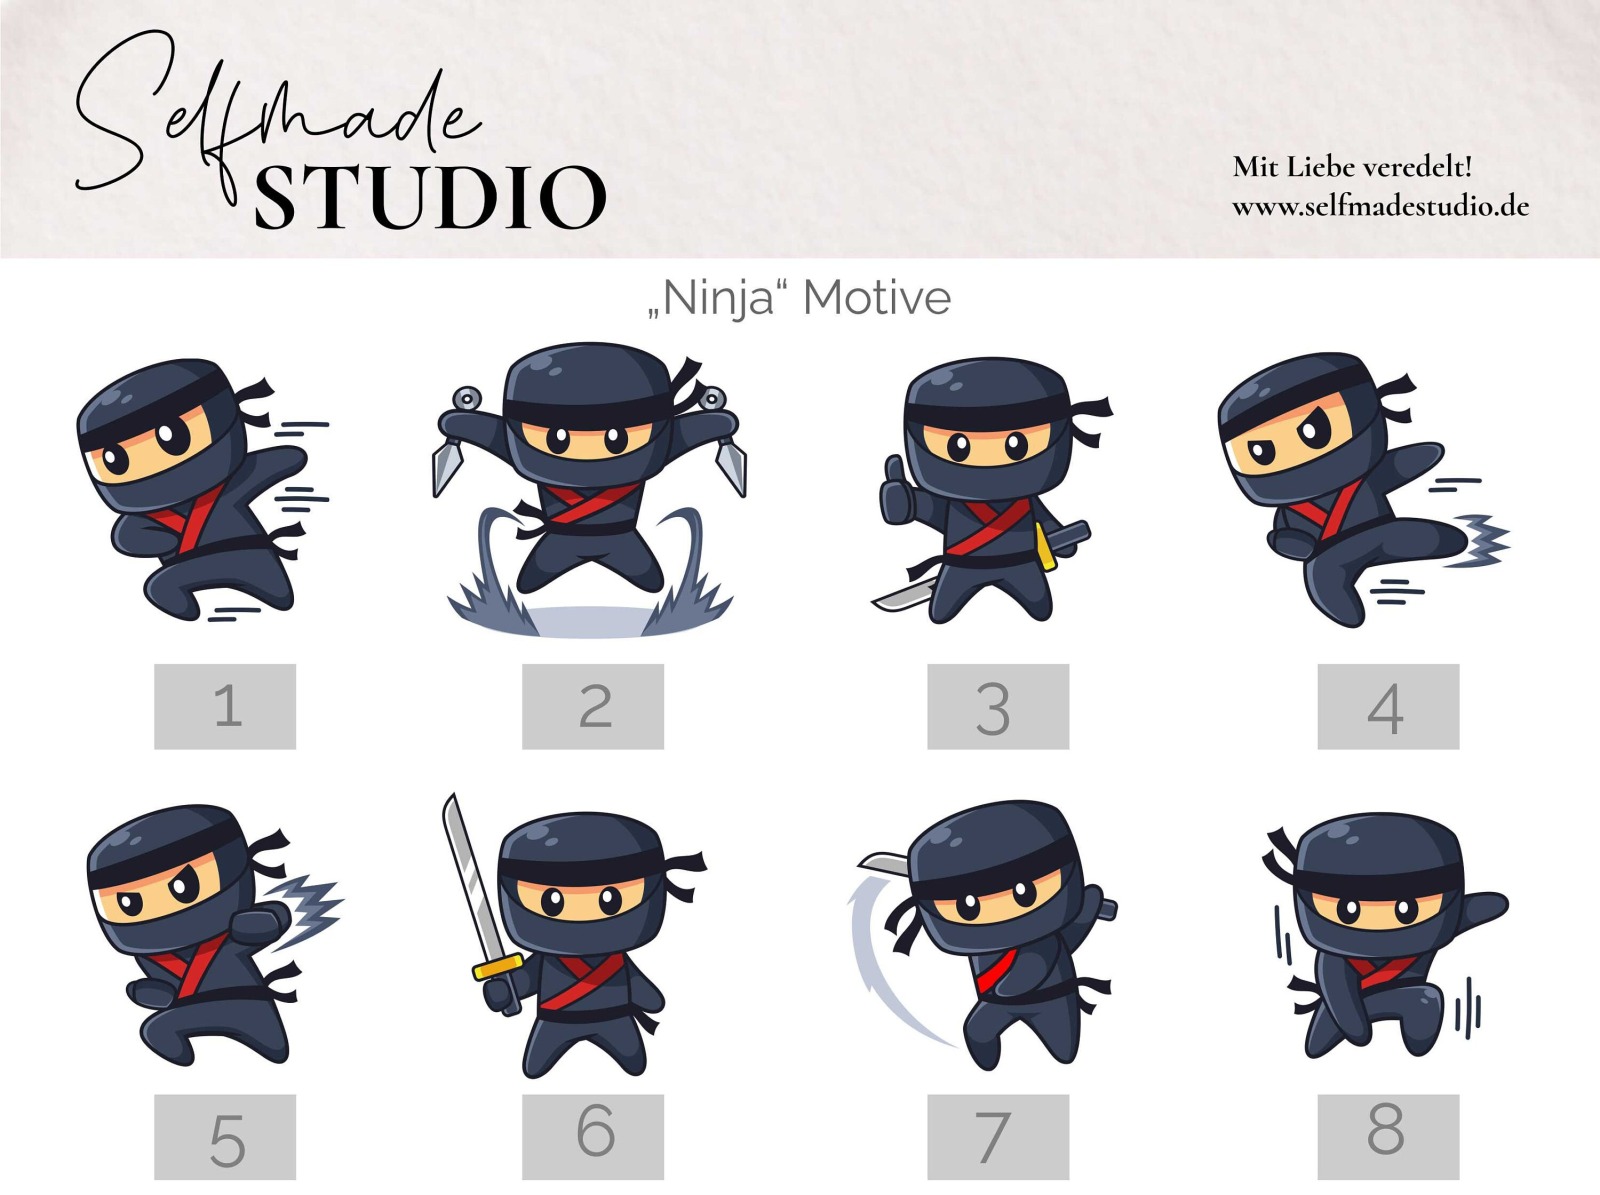 Geschenkdose mit Name und Ninja Motiv, Metalldose personalisiert mit verschiedene Ninjas, Metall Box